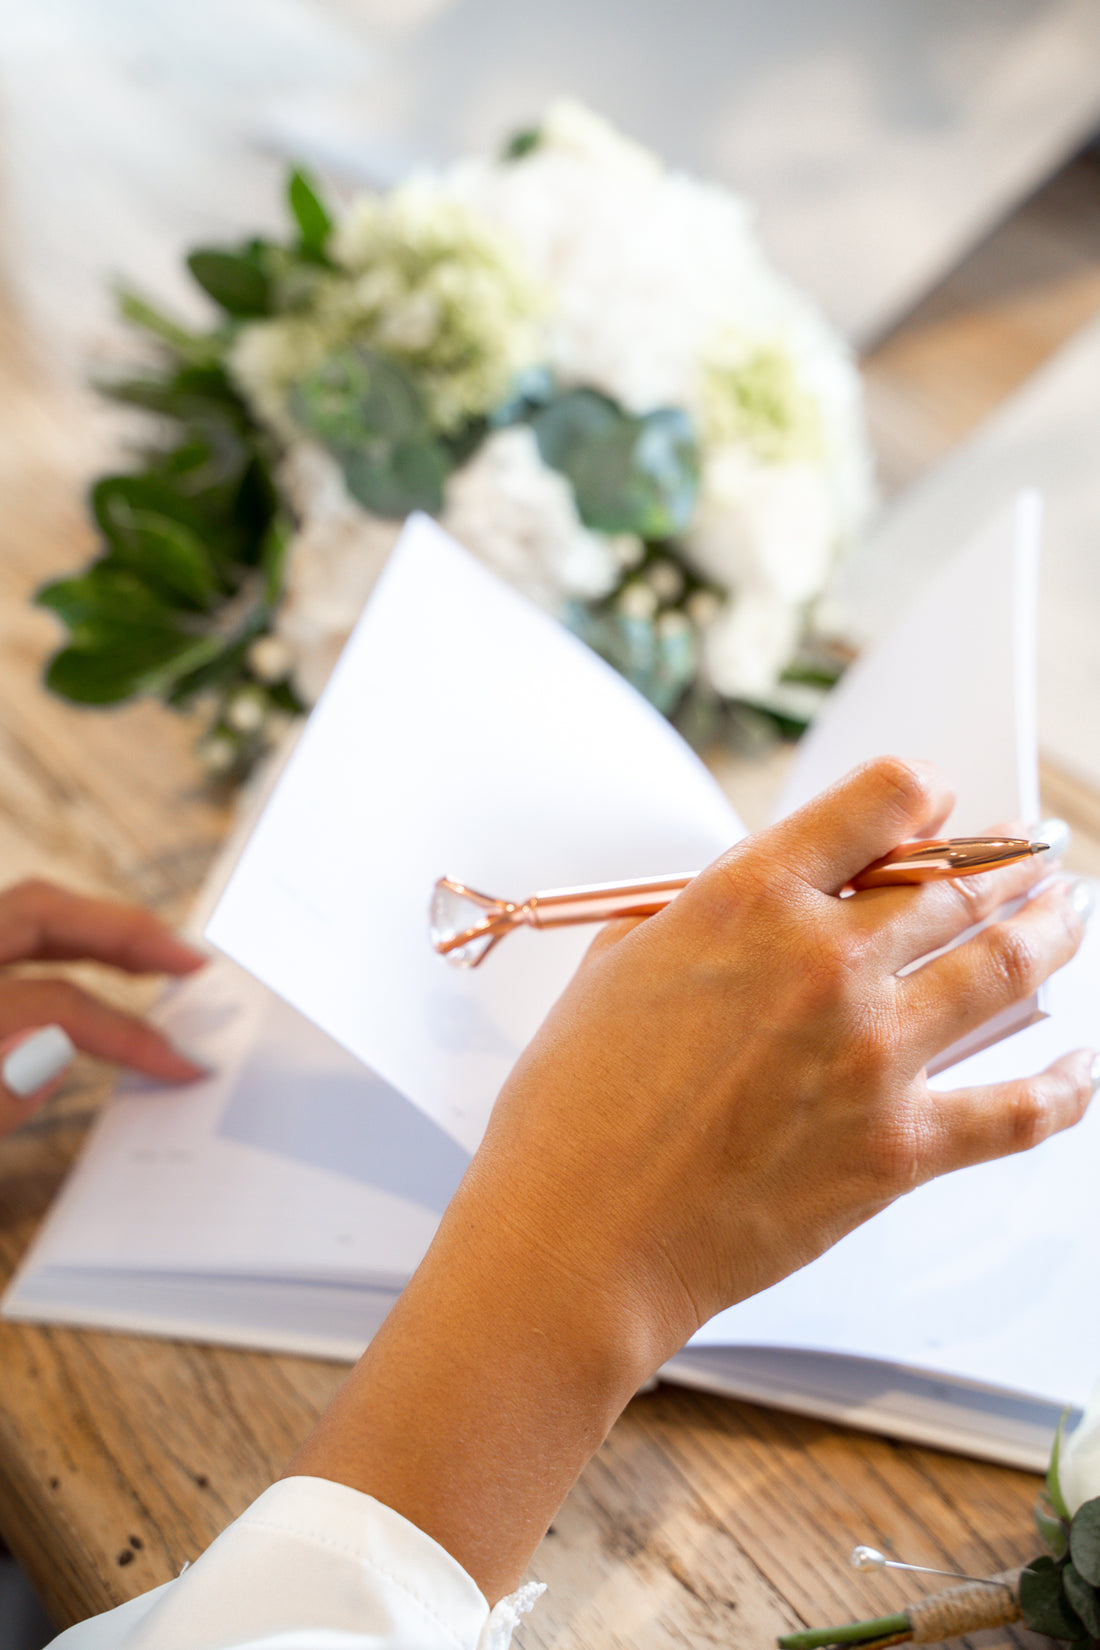 Why Choose DIY Wedding Planning?